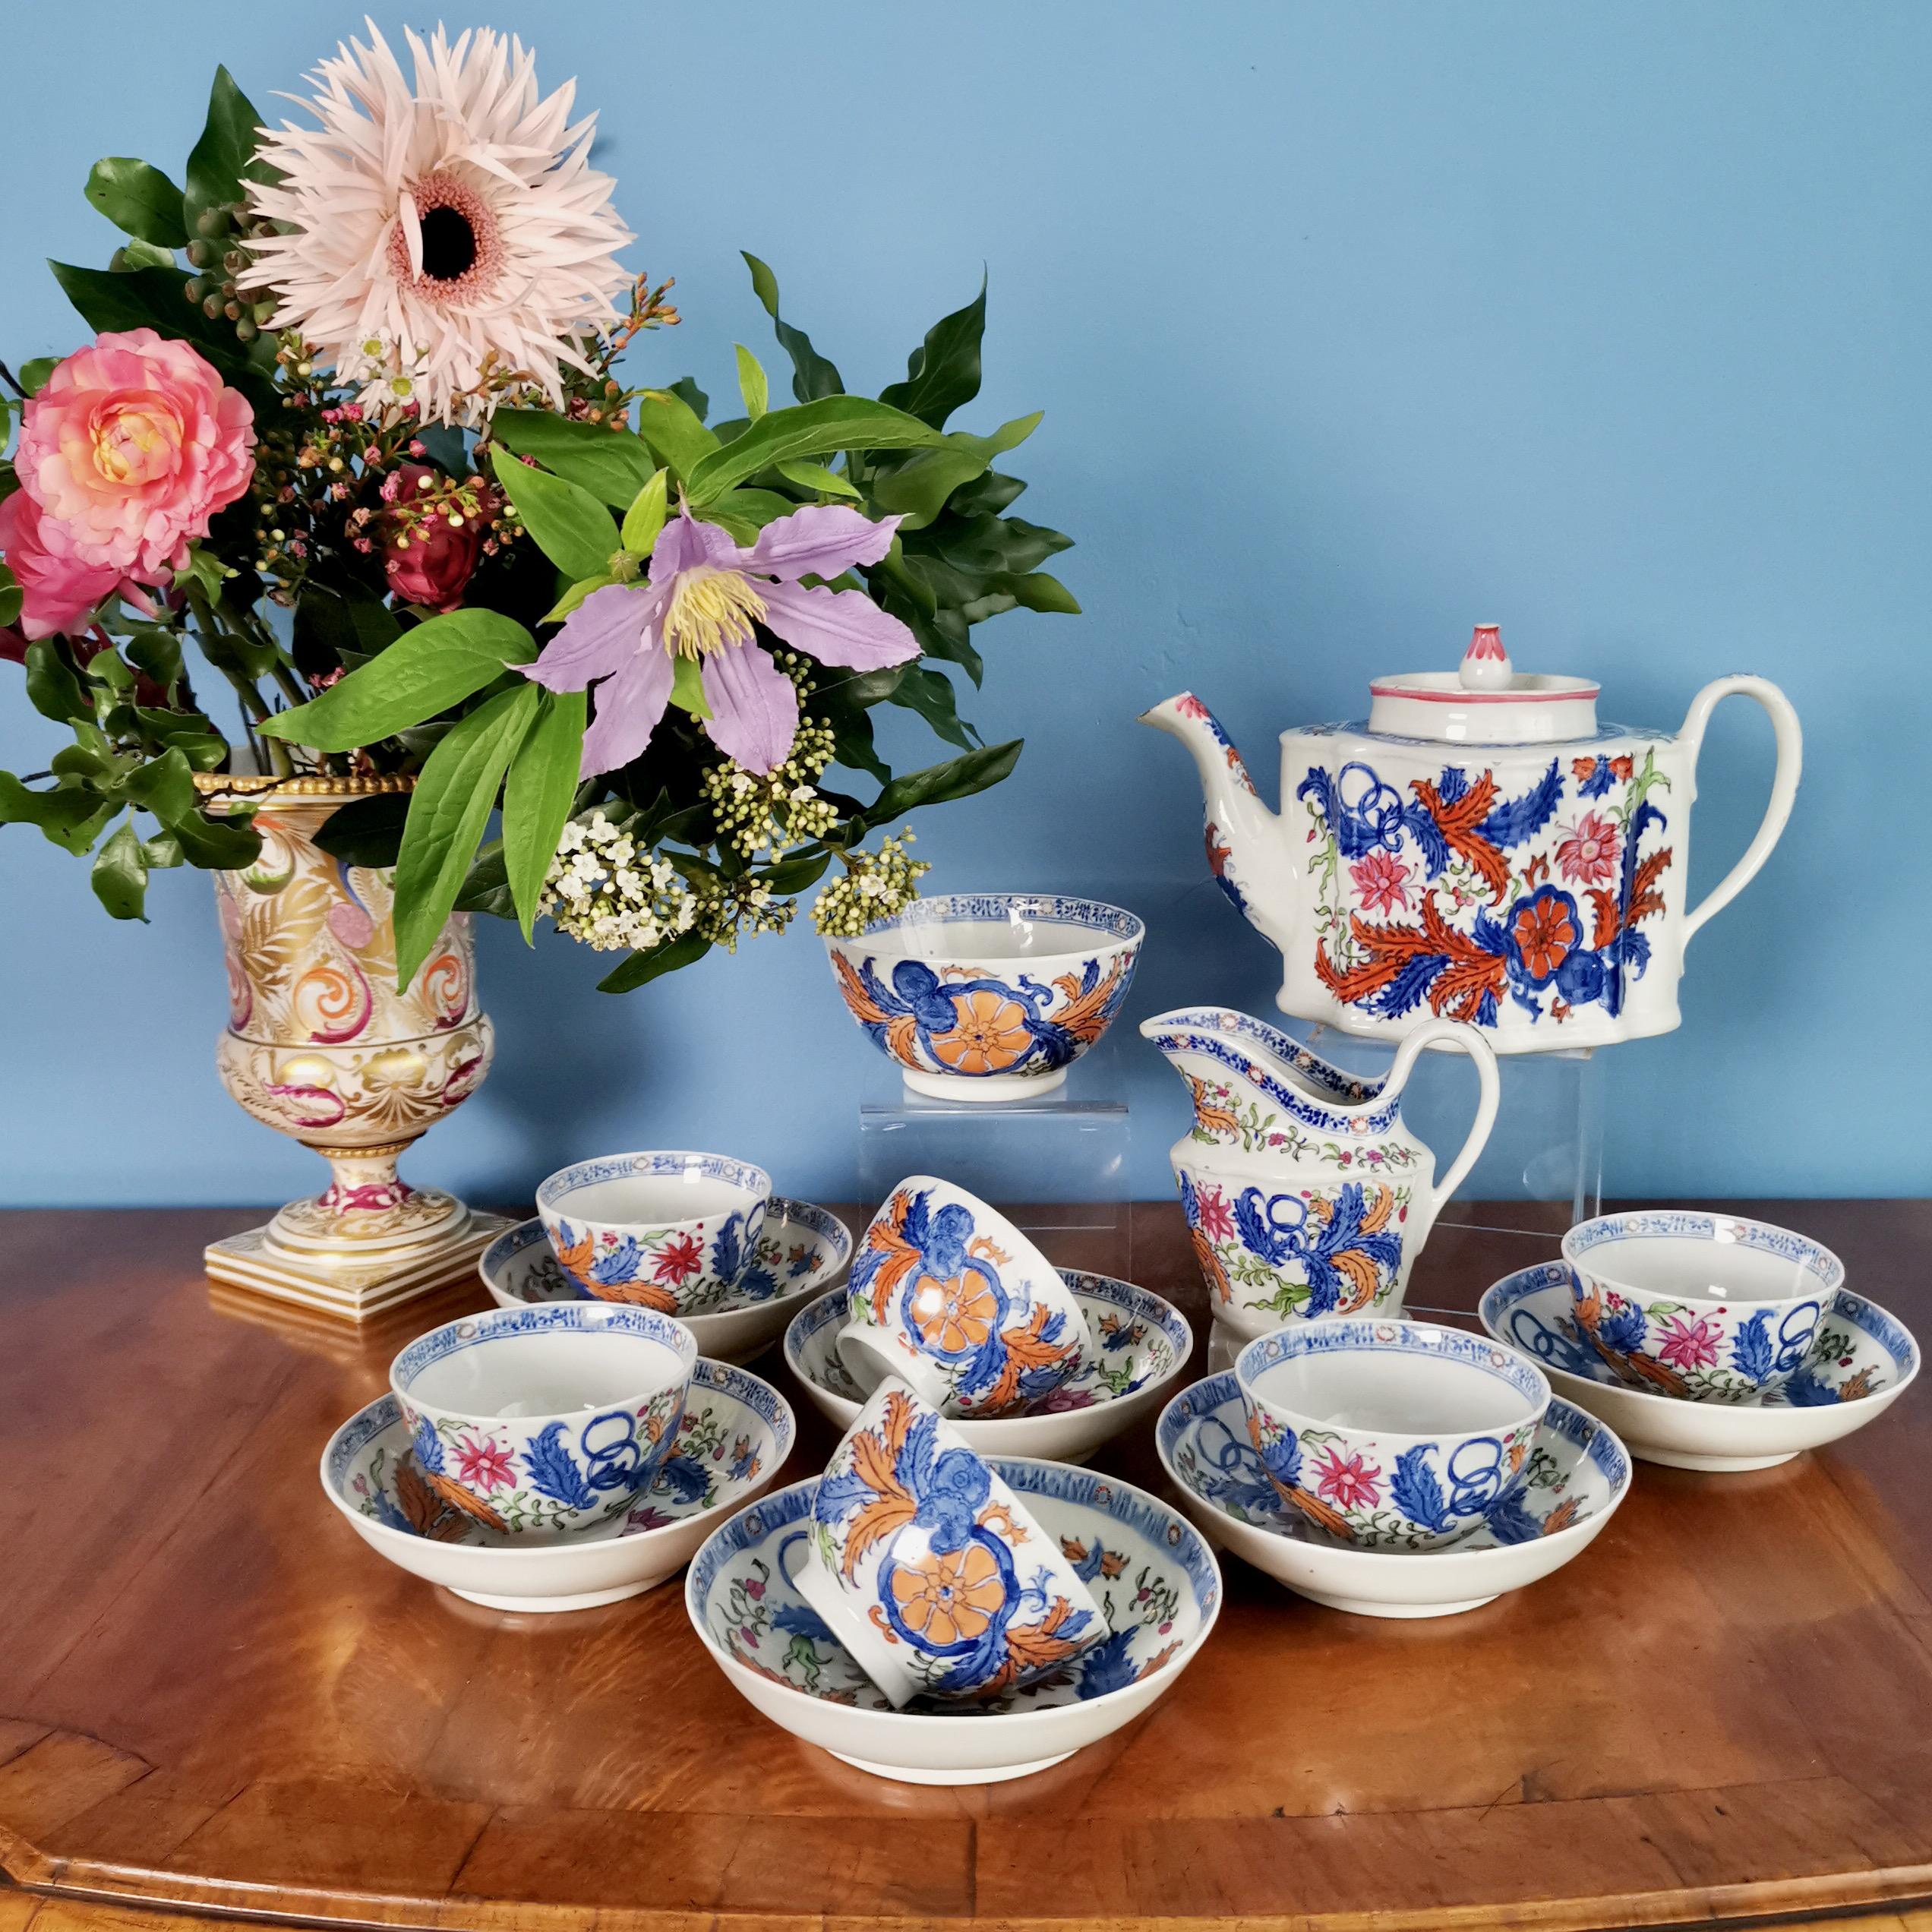 Il s'agit d'un superbe service à thé fabriqué par New Hall vers 1795. Le service est réalisé en porcelaine hybride à pâte dure et décoré d'un audacieux motif chinois de grandes gerbes de fleurs. Le service se compose d'une théière avec couvercle,